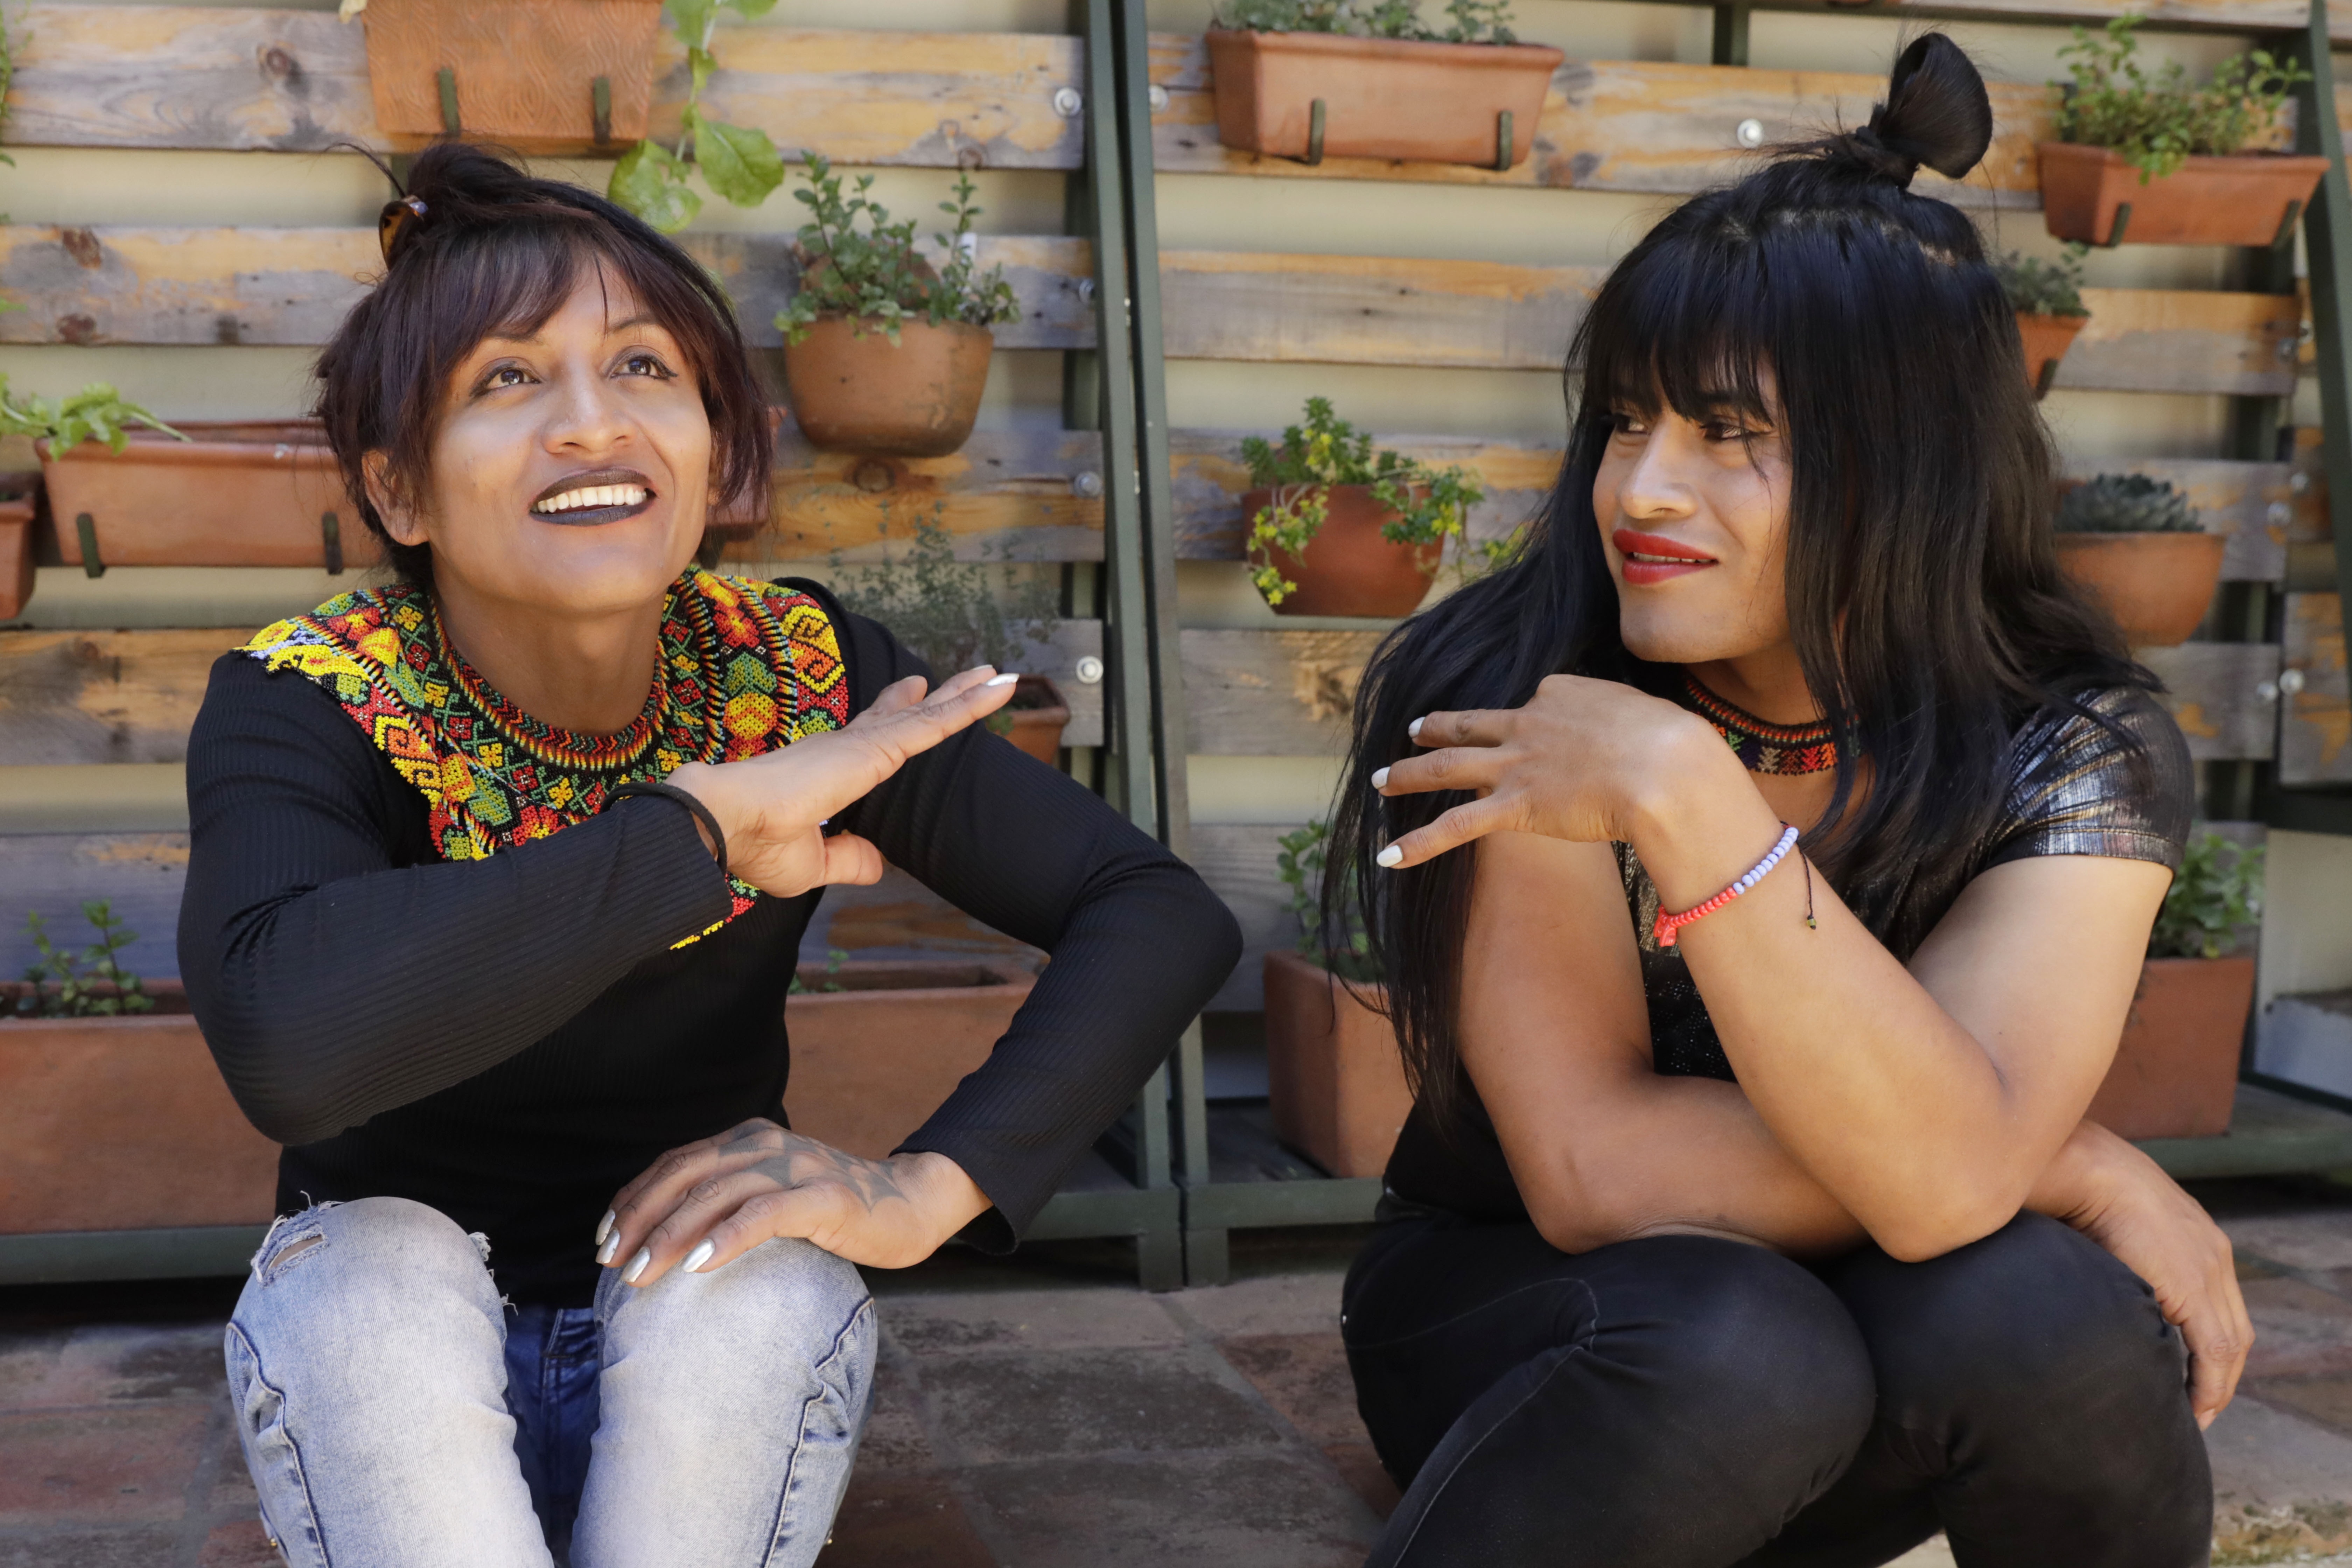 ACOMPAÑA CRÓNICA: COLOMBIA LGTBI. BOG400. BOGOTÁ (COLOMBIA), 02/07/2022.- Roxana y Alexandra (d), indígenas Embera trans, hablan durante una entrevista con Efe el 01 de julio de 2022, en Bogotá (Colombia). Las "wërapara" son, literalmente en embera, las "no mujeres". Pero ellas, un grupo de mujeres trans de una comunidad indígena del centro de Colombia, se reivindican ahora así después de muchas discriminaciones y de luchar por ser aceptadas como son. EFE/ Carlos Ortega
